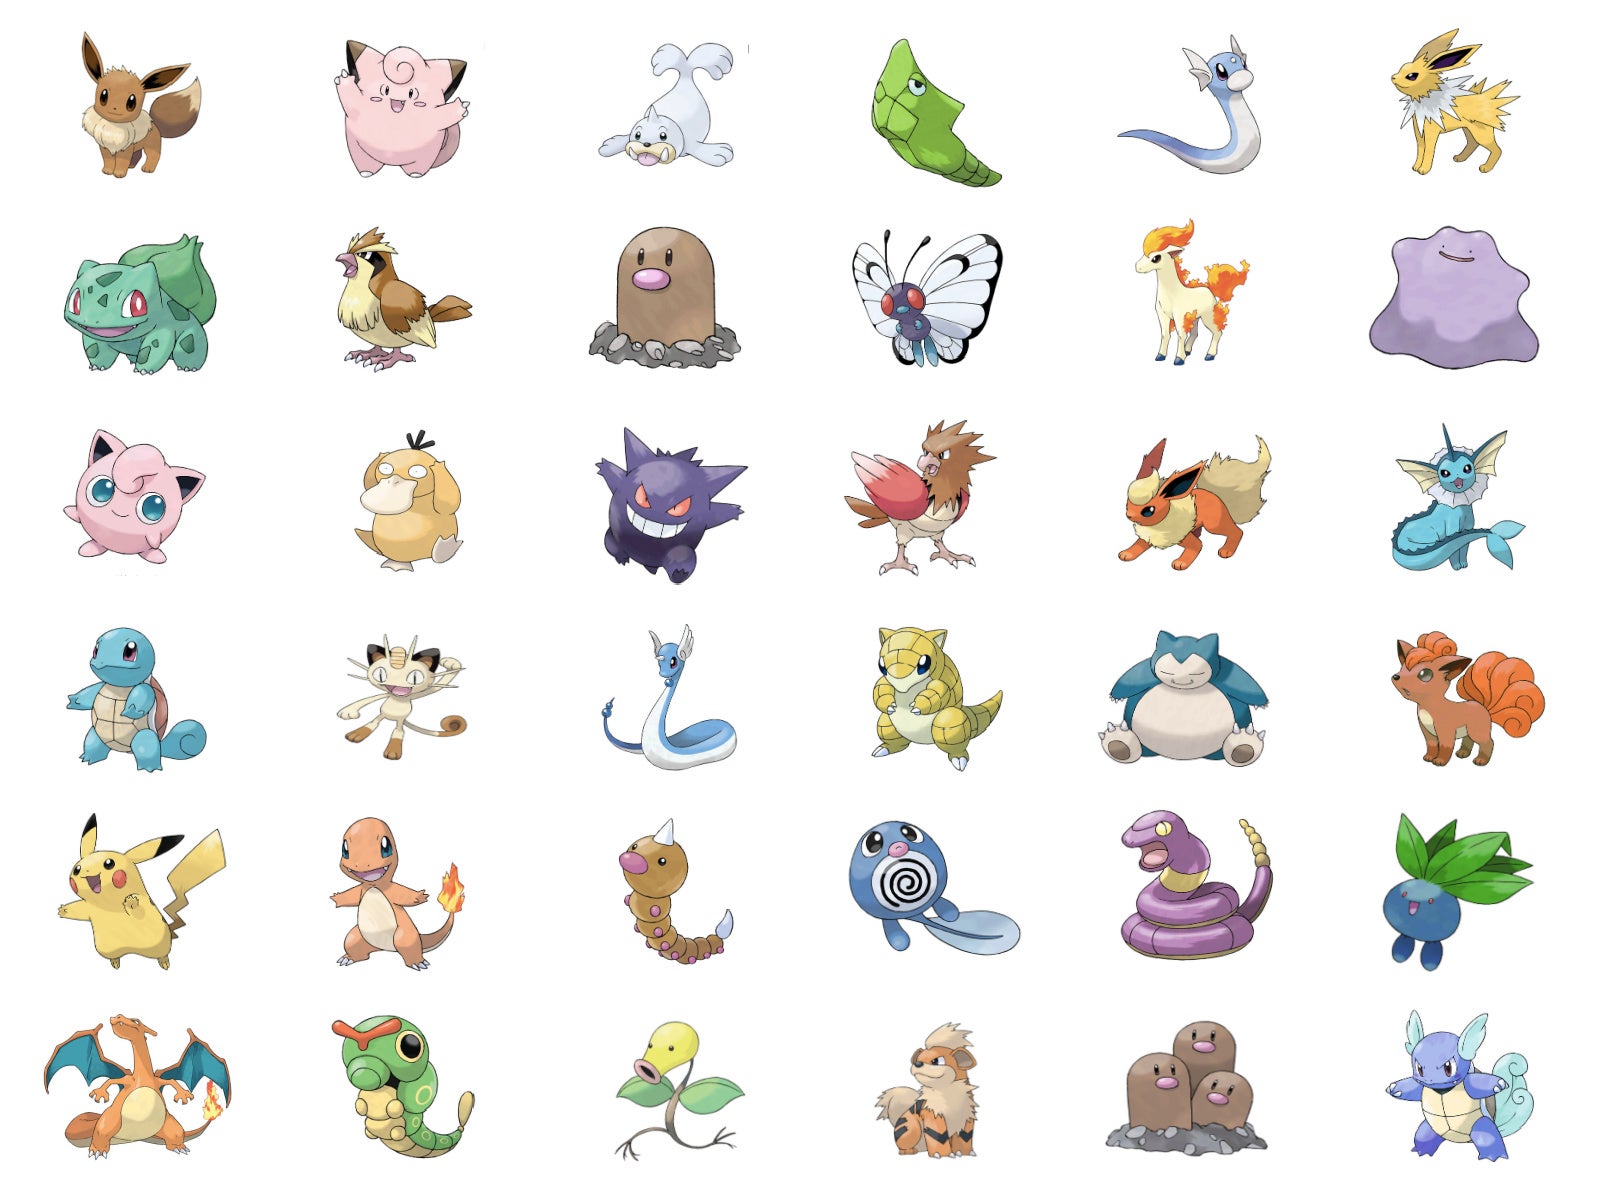 Gen 1 Pokémon Quiz: Can You Name 'em All? - Quizondo